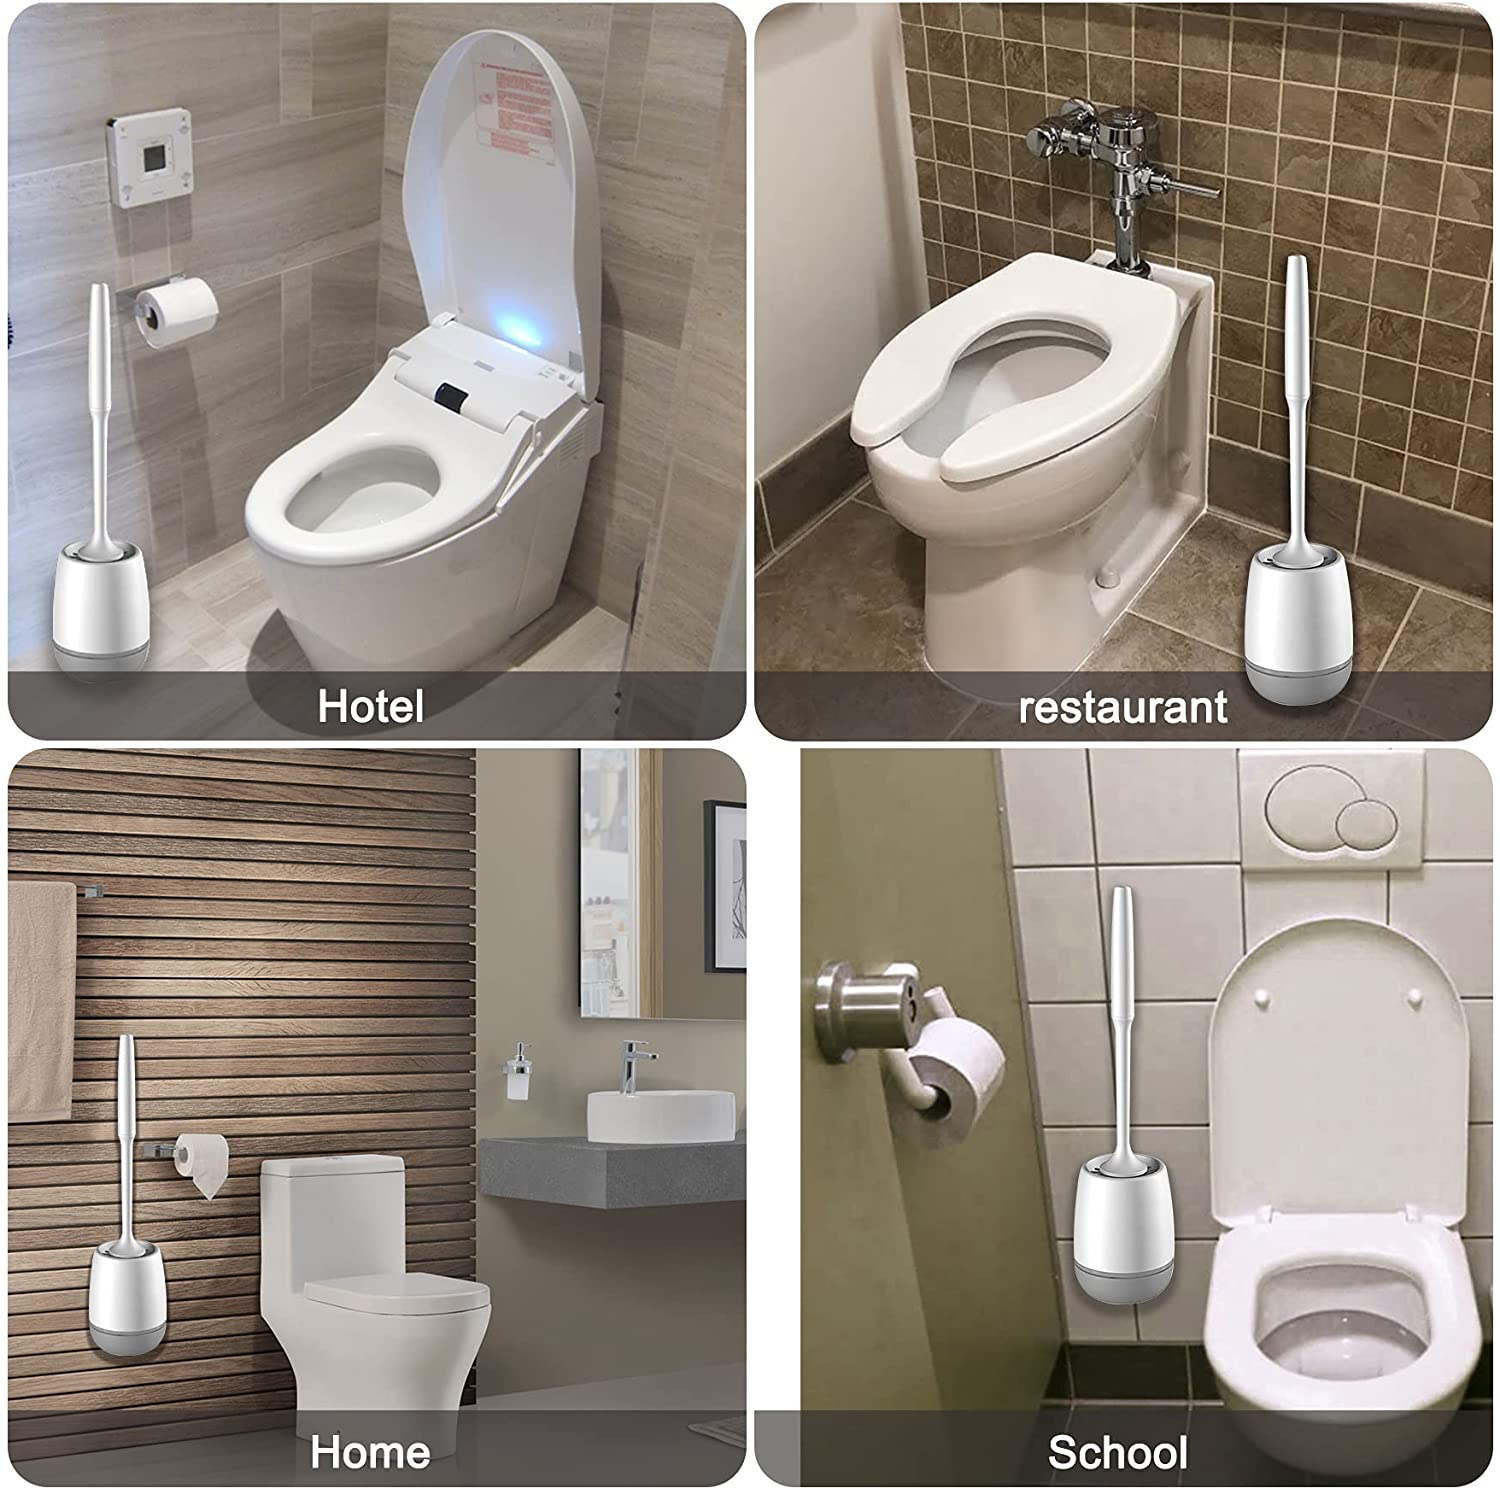 Invisibrush Hidden Toilet Brush White - Squatty Potty